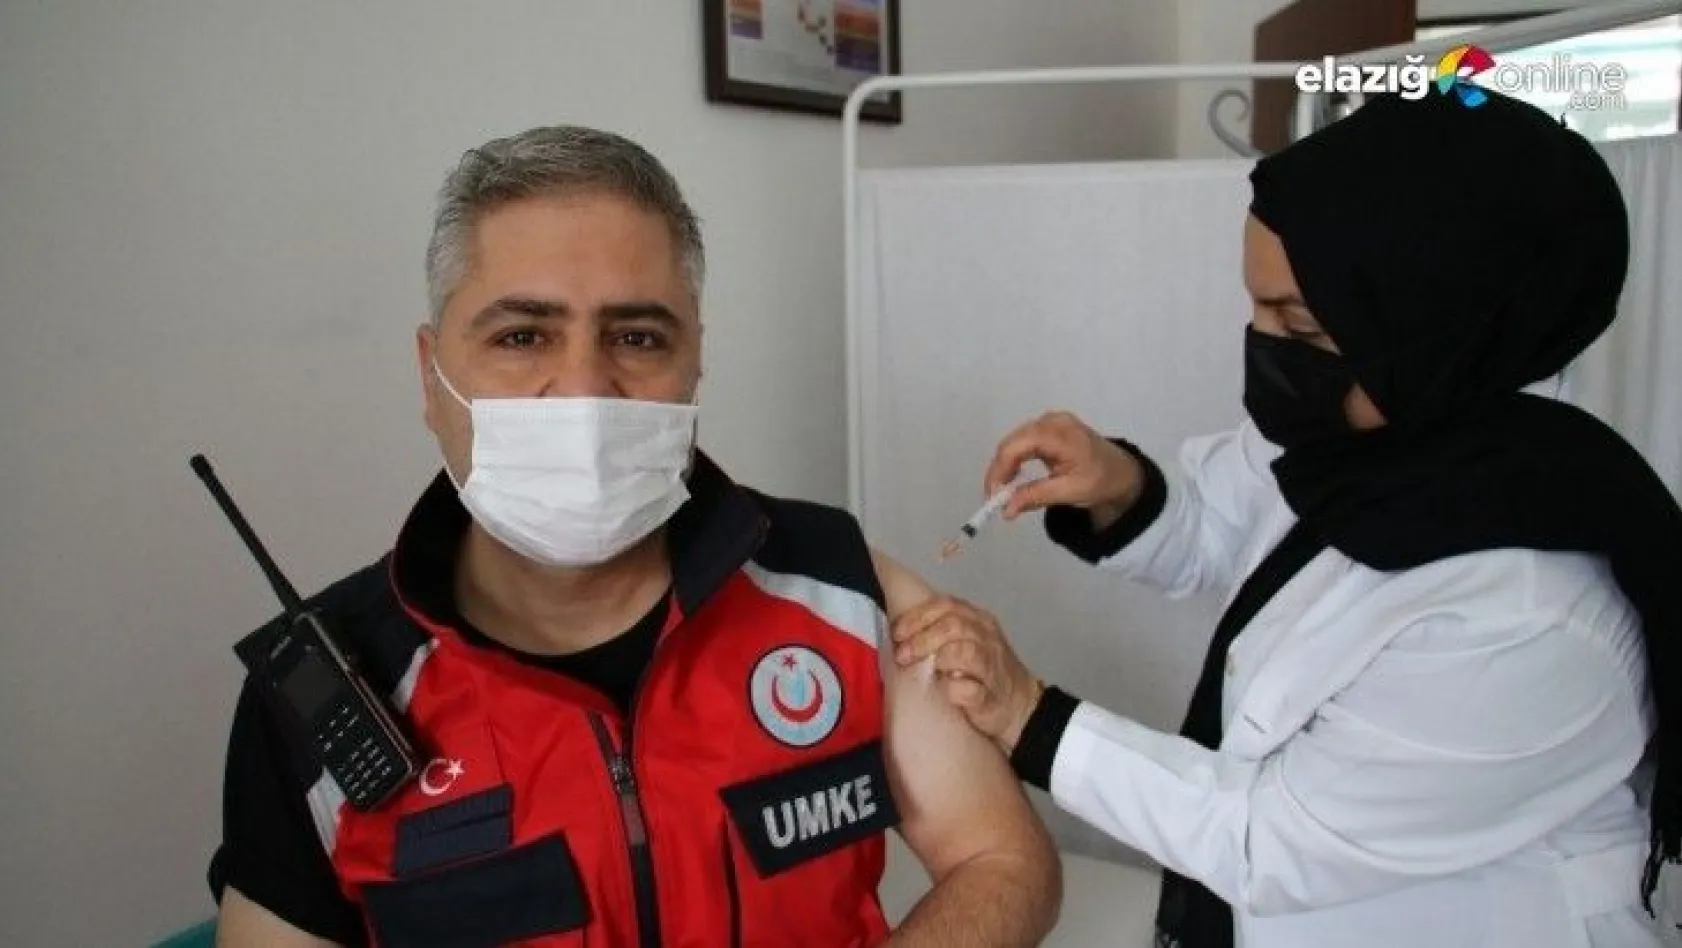 Elazığ'da UMKE personeli Covid-19 aşısı oldu